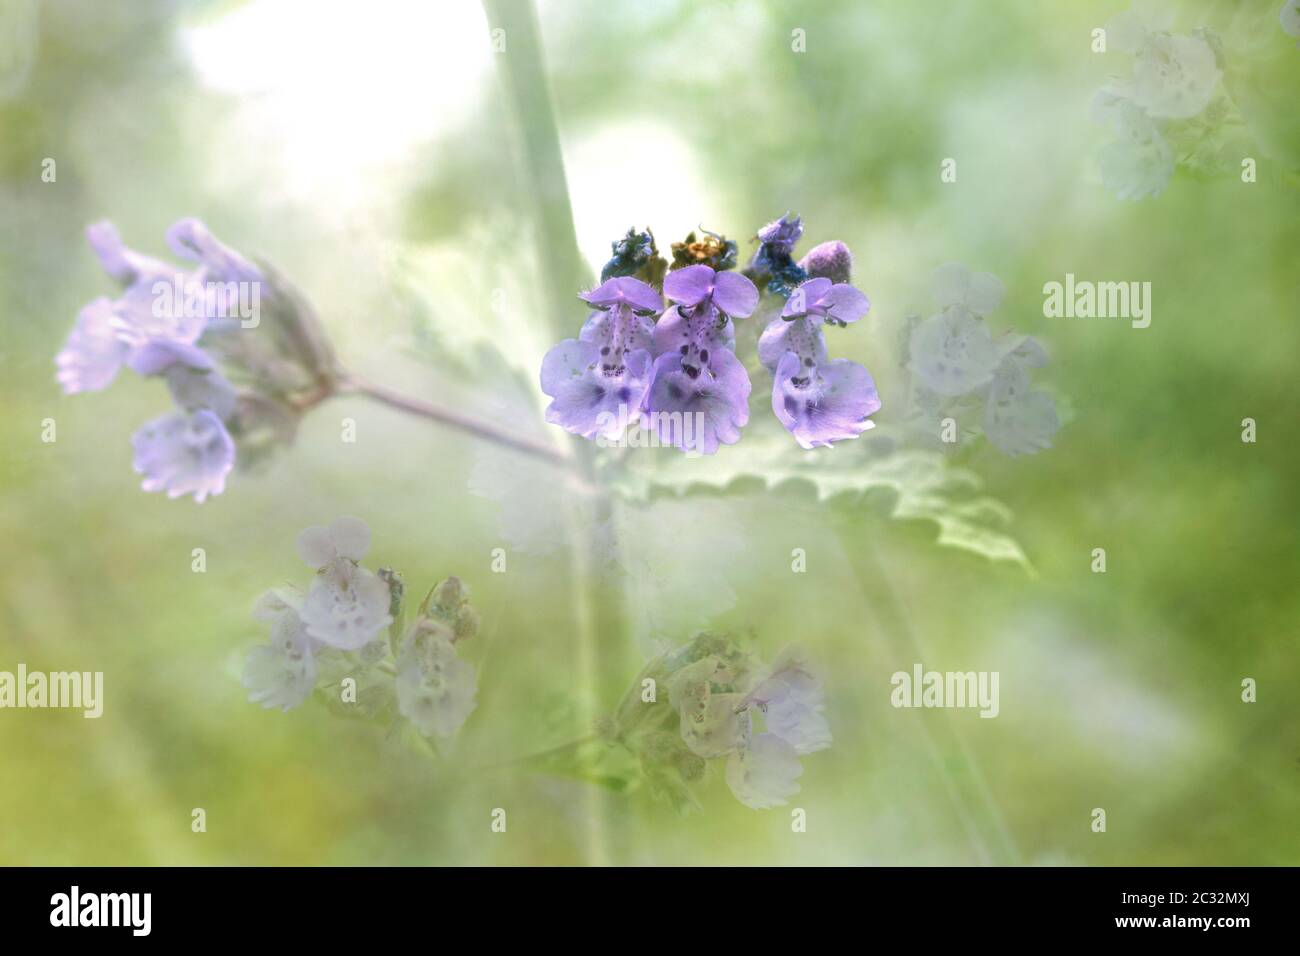 foto artistica composta da fiori e foglie di menta. Un mix sognante di piccoli fiori viola viola che si sbiadiscono l'uno nell'altro Foto Stock